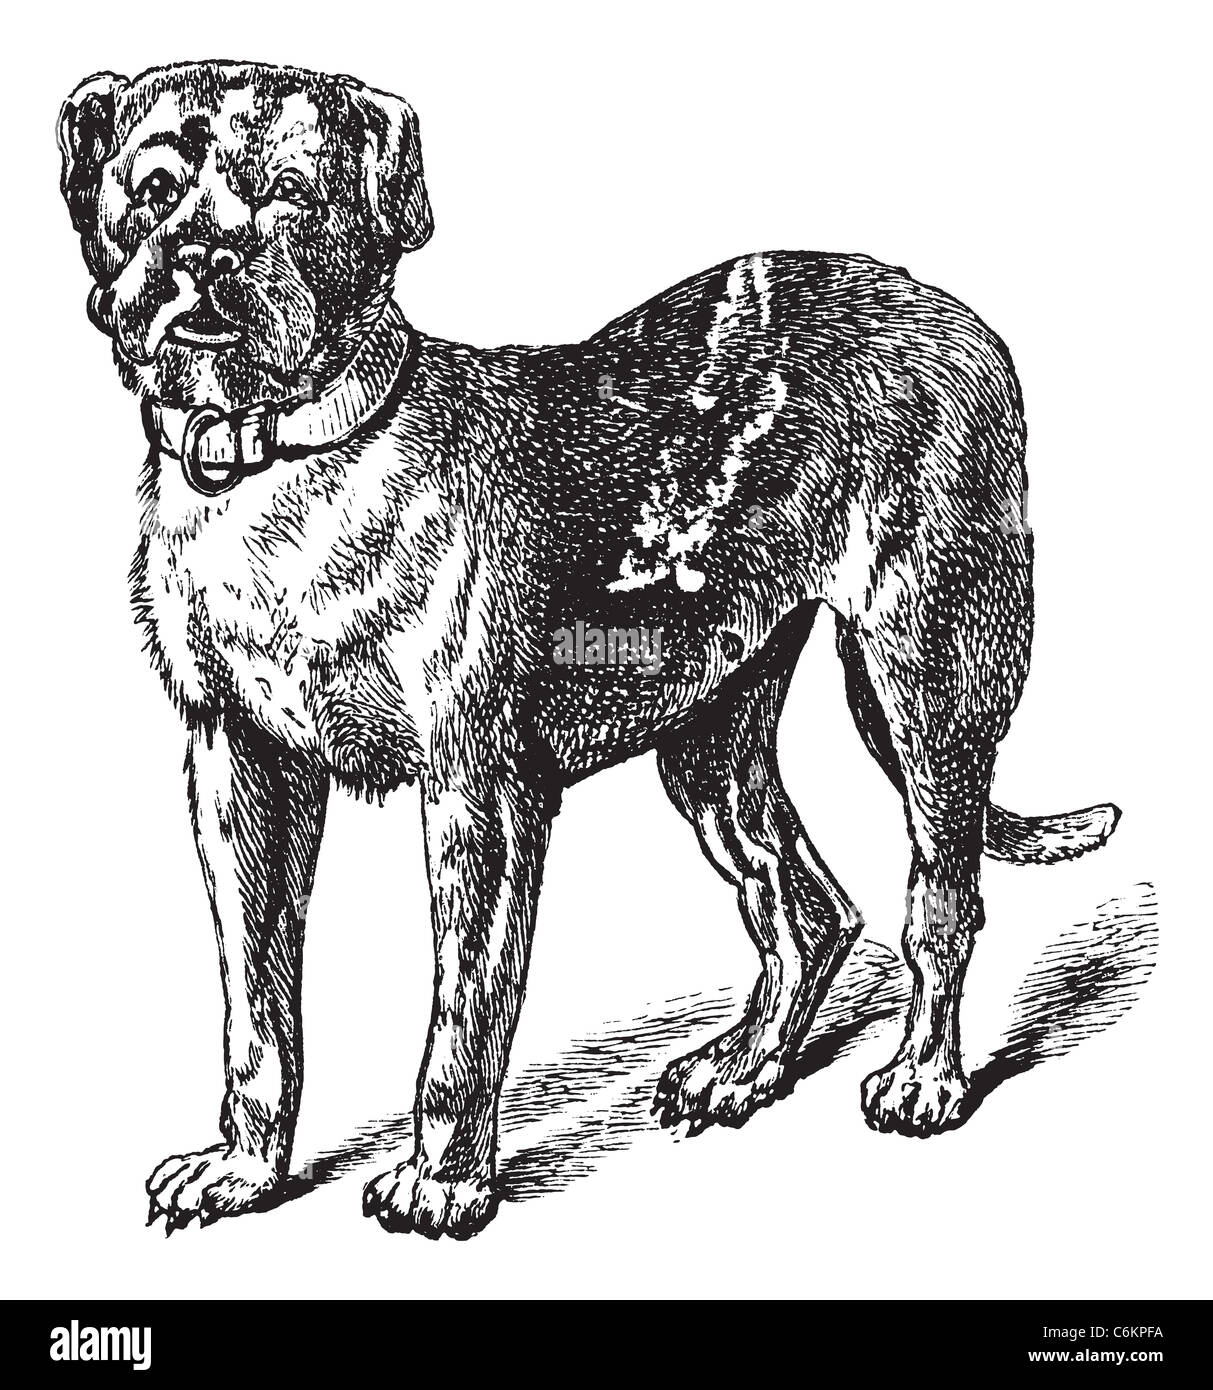 Dogue o Dogue de Bordeaux o Bordeaux Mastiff o Francese Mastiff o Bordeauxdog o Canis lupus familiaris, vintage incisione. Foto Stock